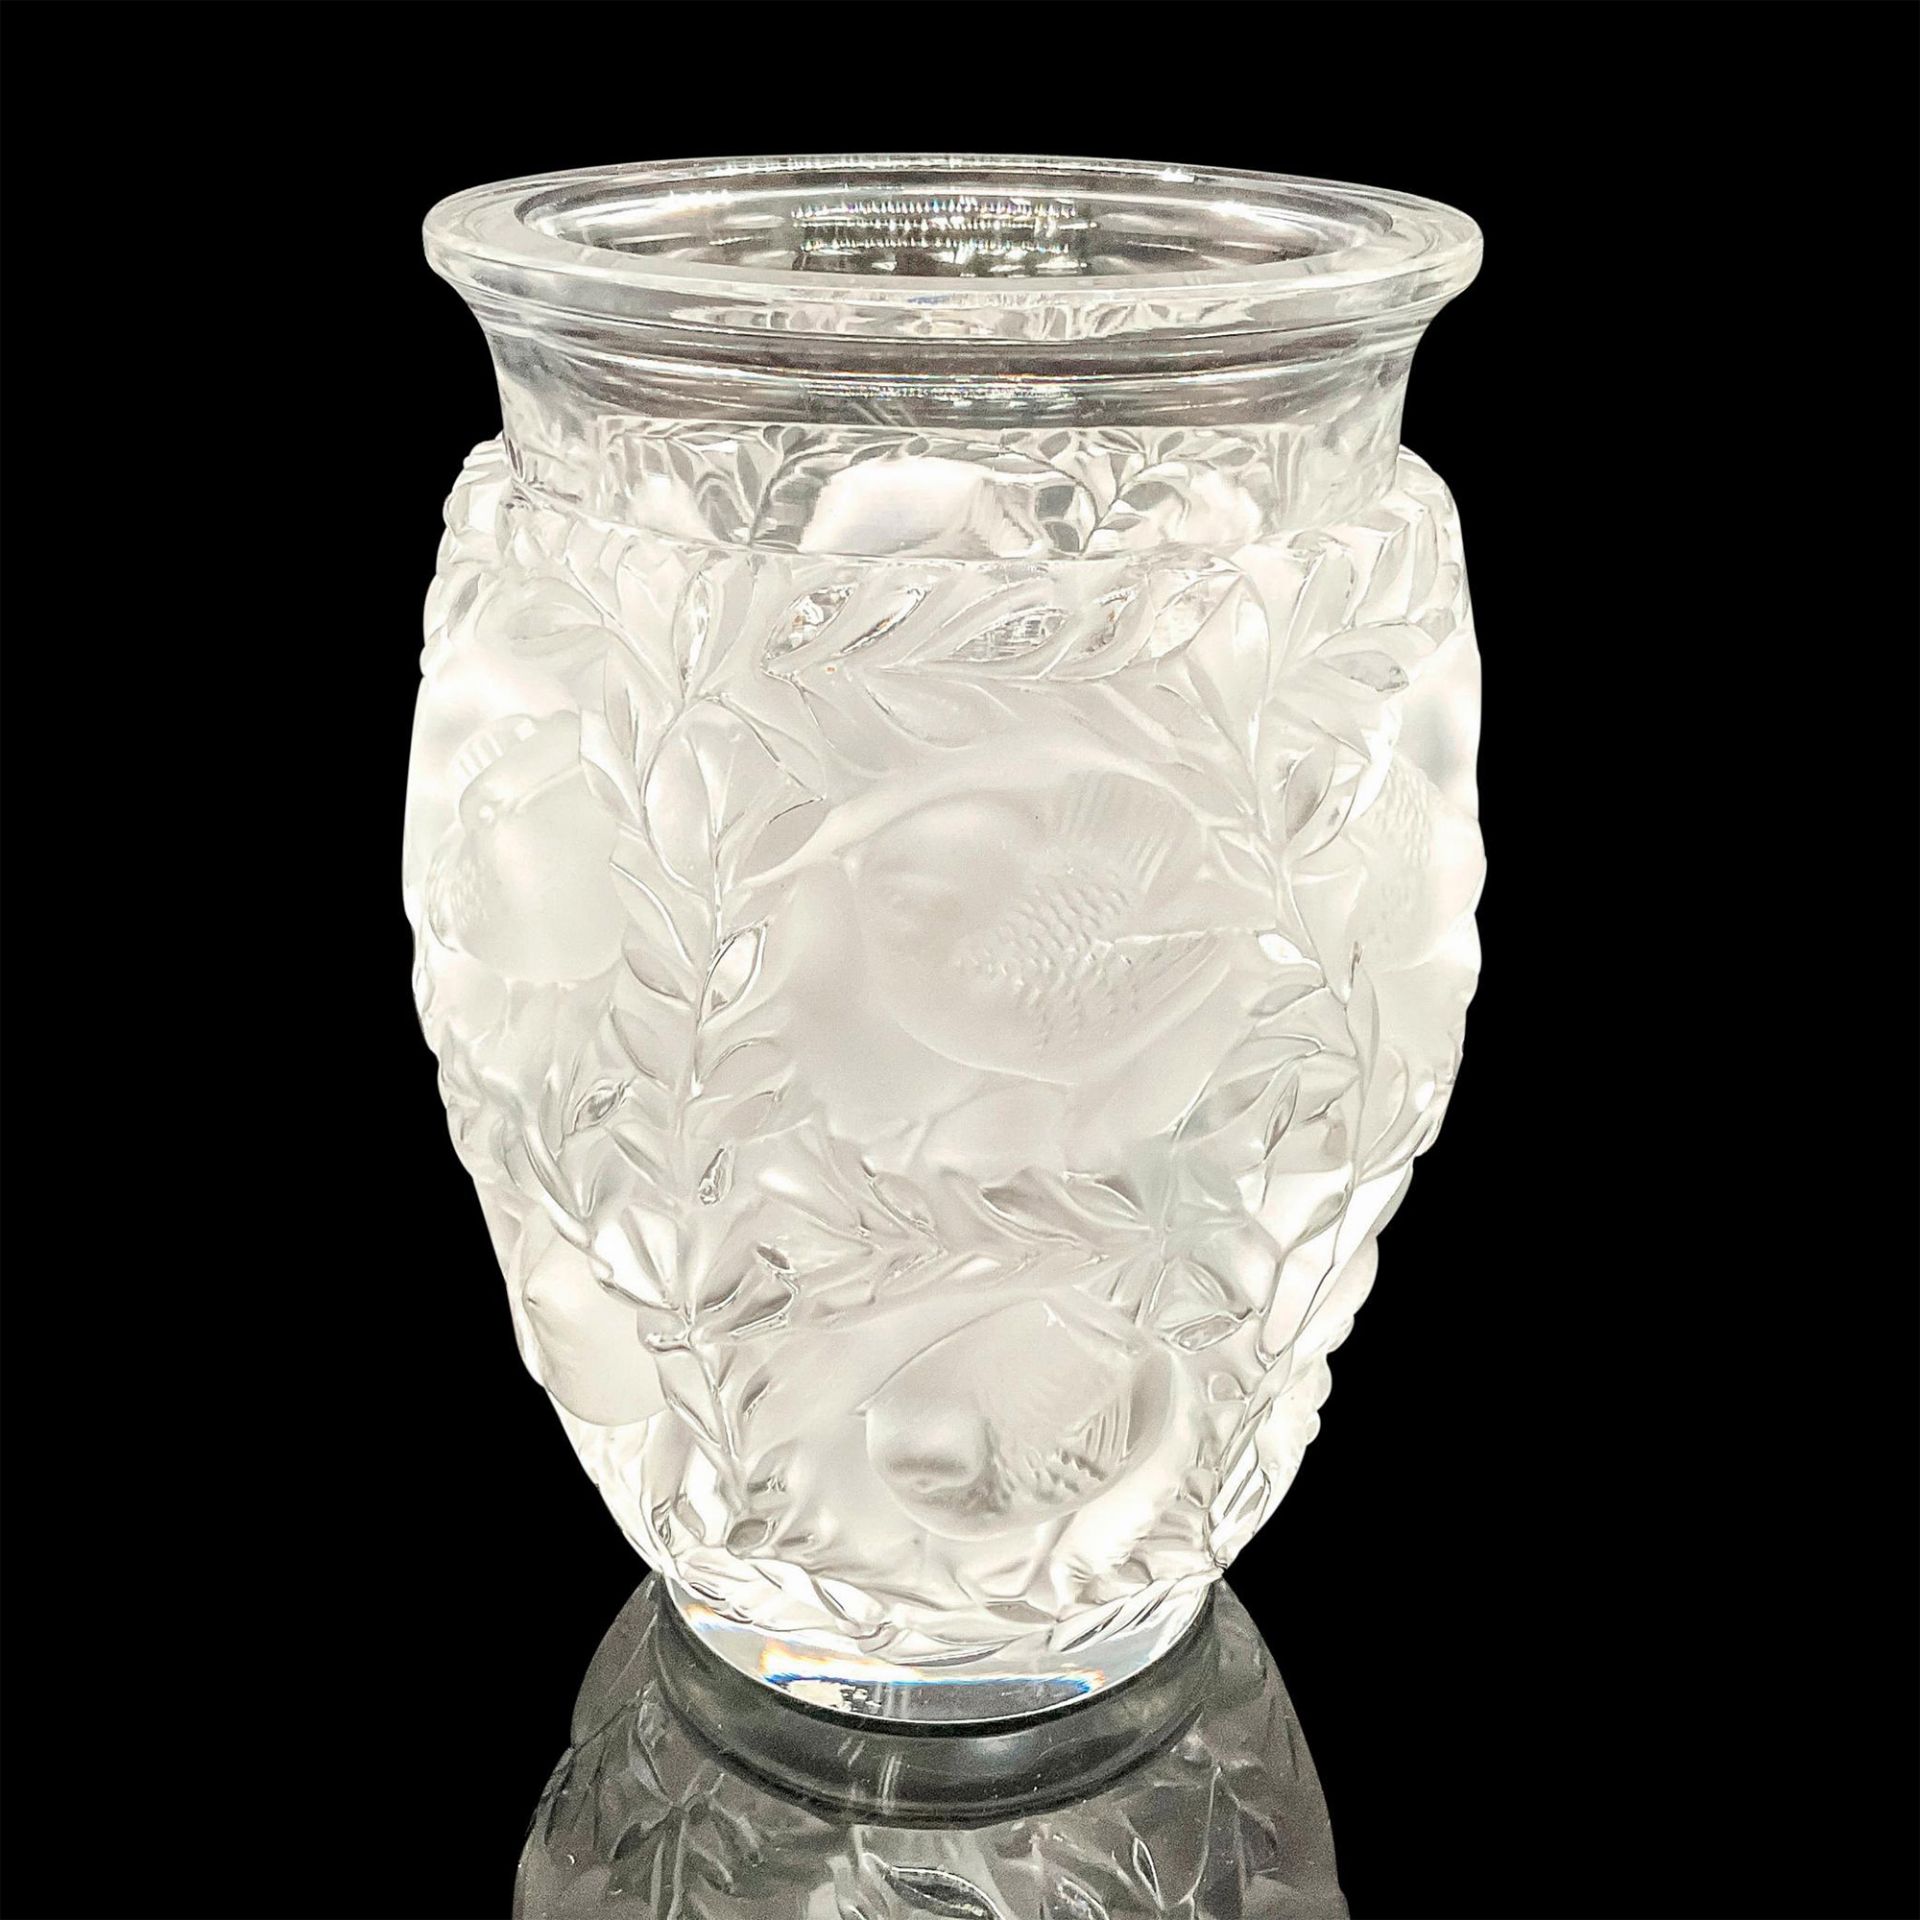 Lalique Crystal Vase, Bagatelle - Image 2 of 3